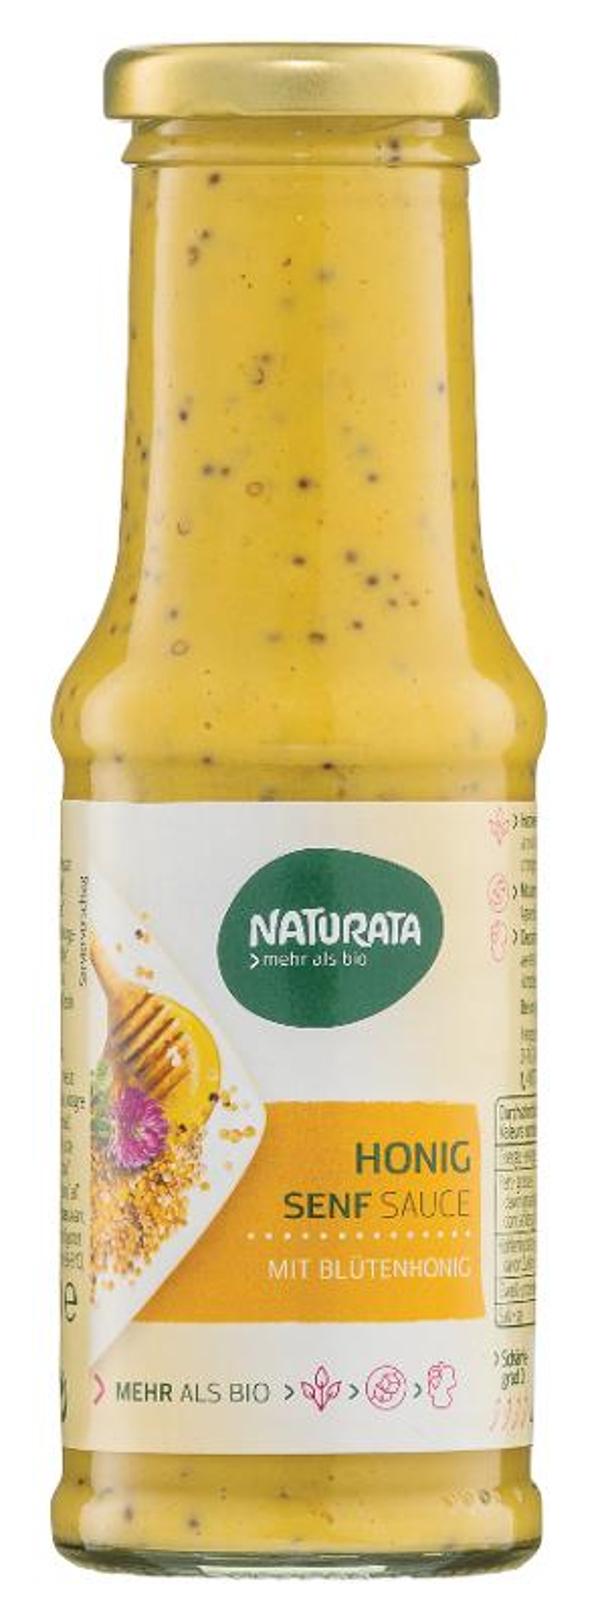 Produktfoto zu Honig Senf Sauce von Naturata